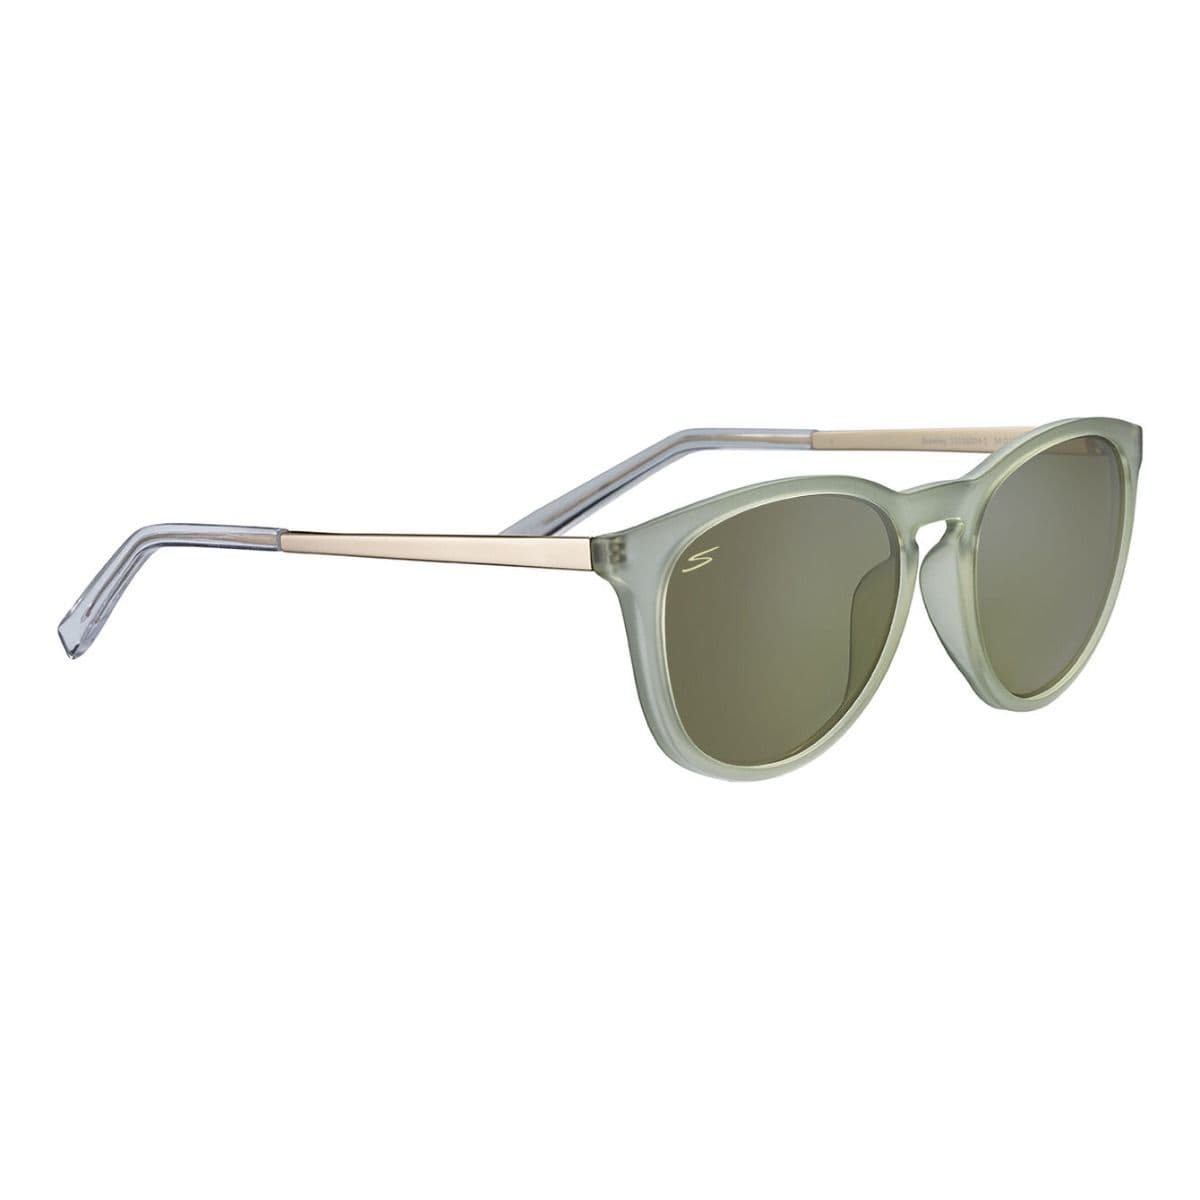 Serengeti Brawley Sunglasses